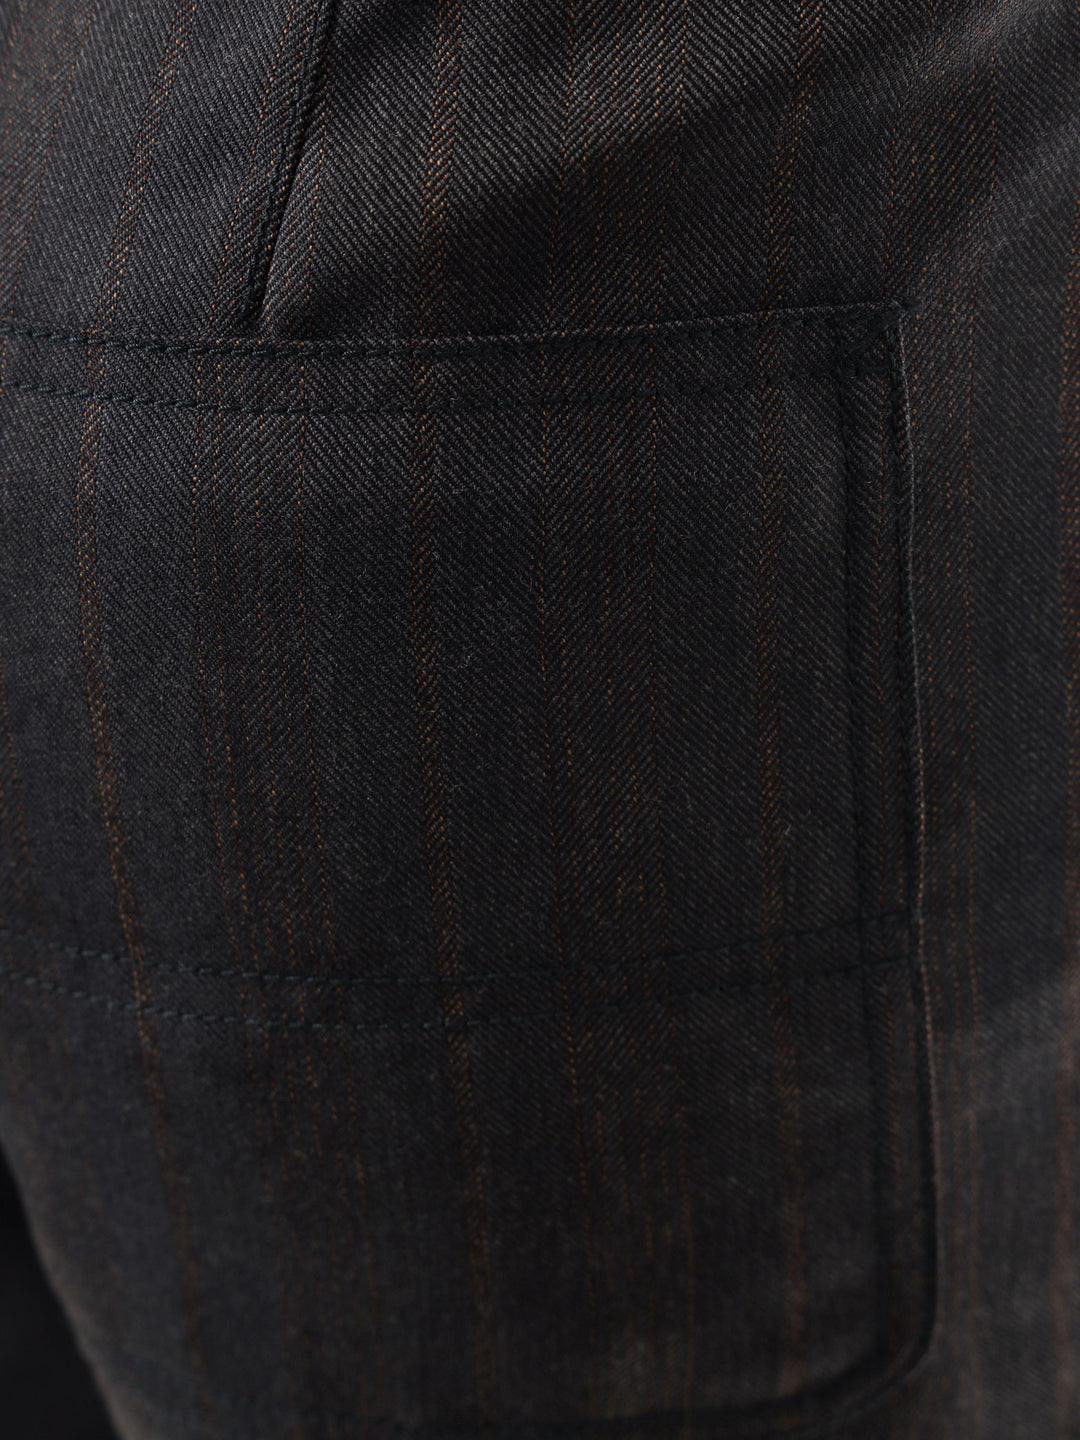 Pantalone Circle in lana vergine  Uso esclusivo di fibre naturali e organiche